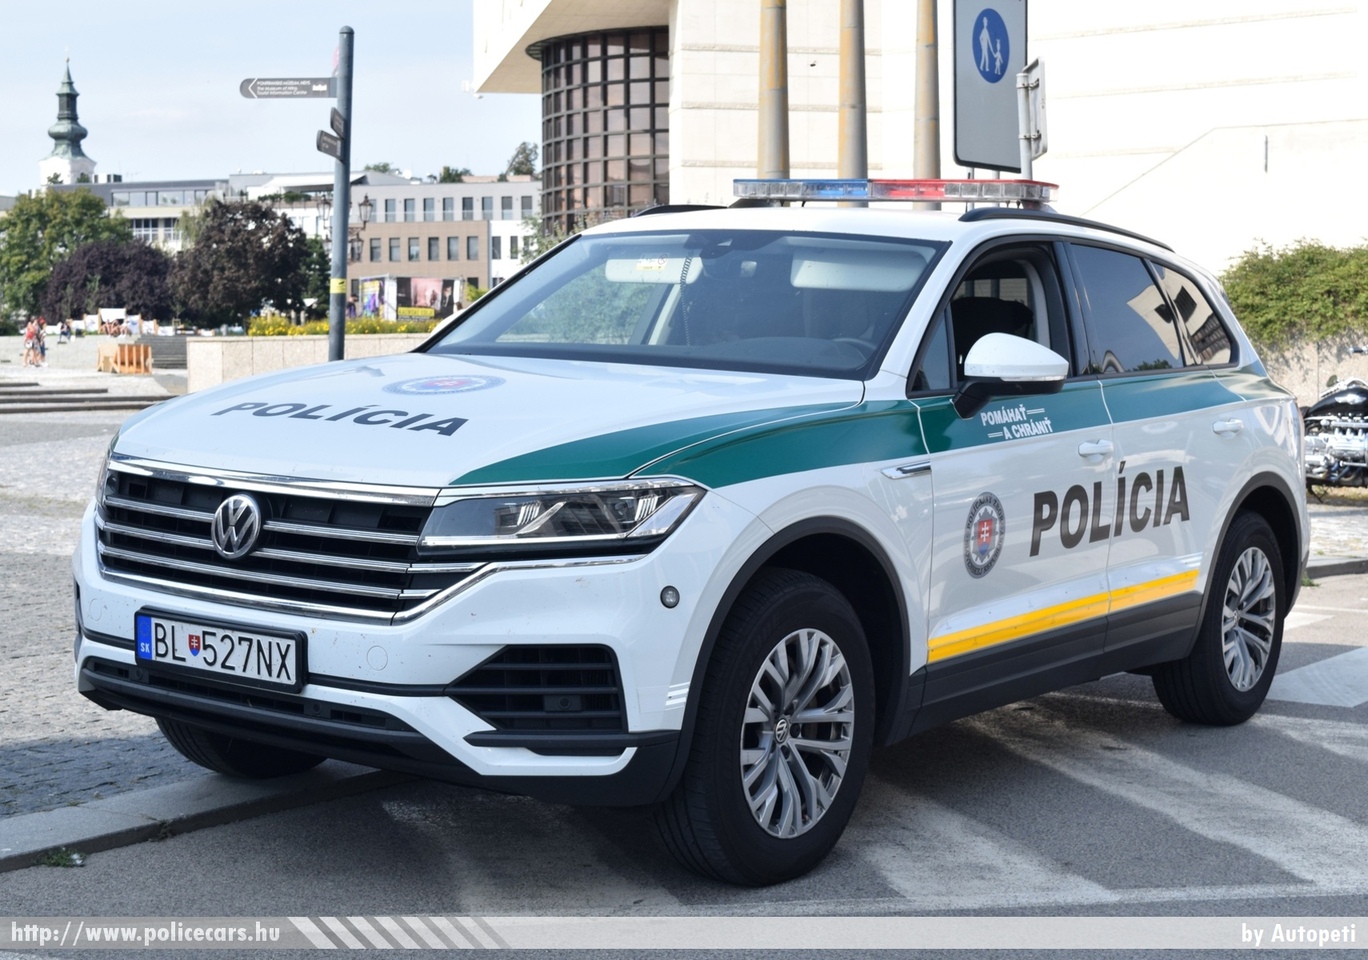 Volkswagen Touareg, fotó: Autopeti
Keywords: szlovák Szlovákia rendőr rendőrautó rendőrség police policecar Slovakia slovakian